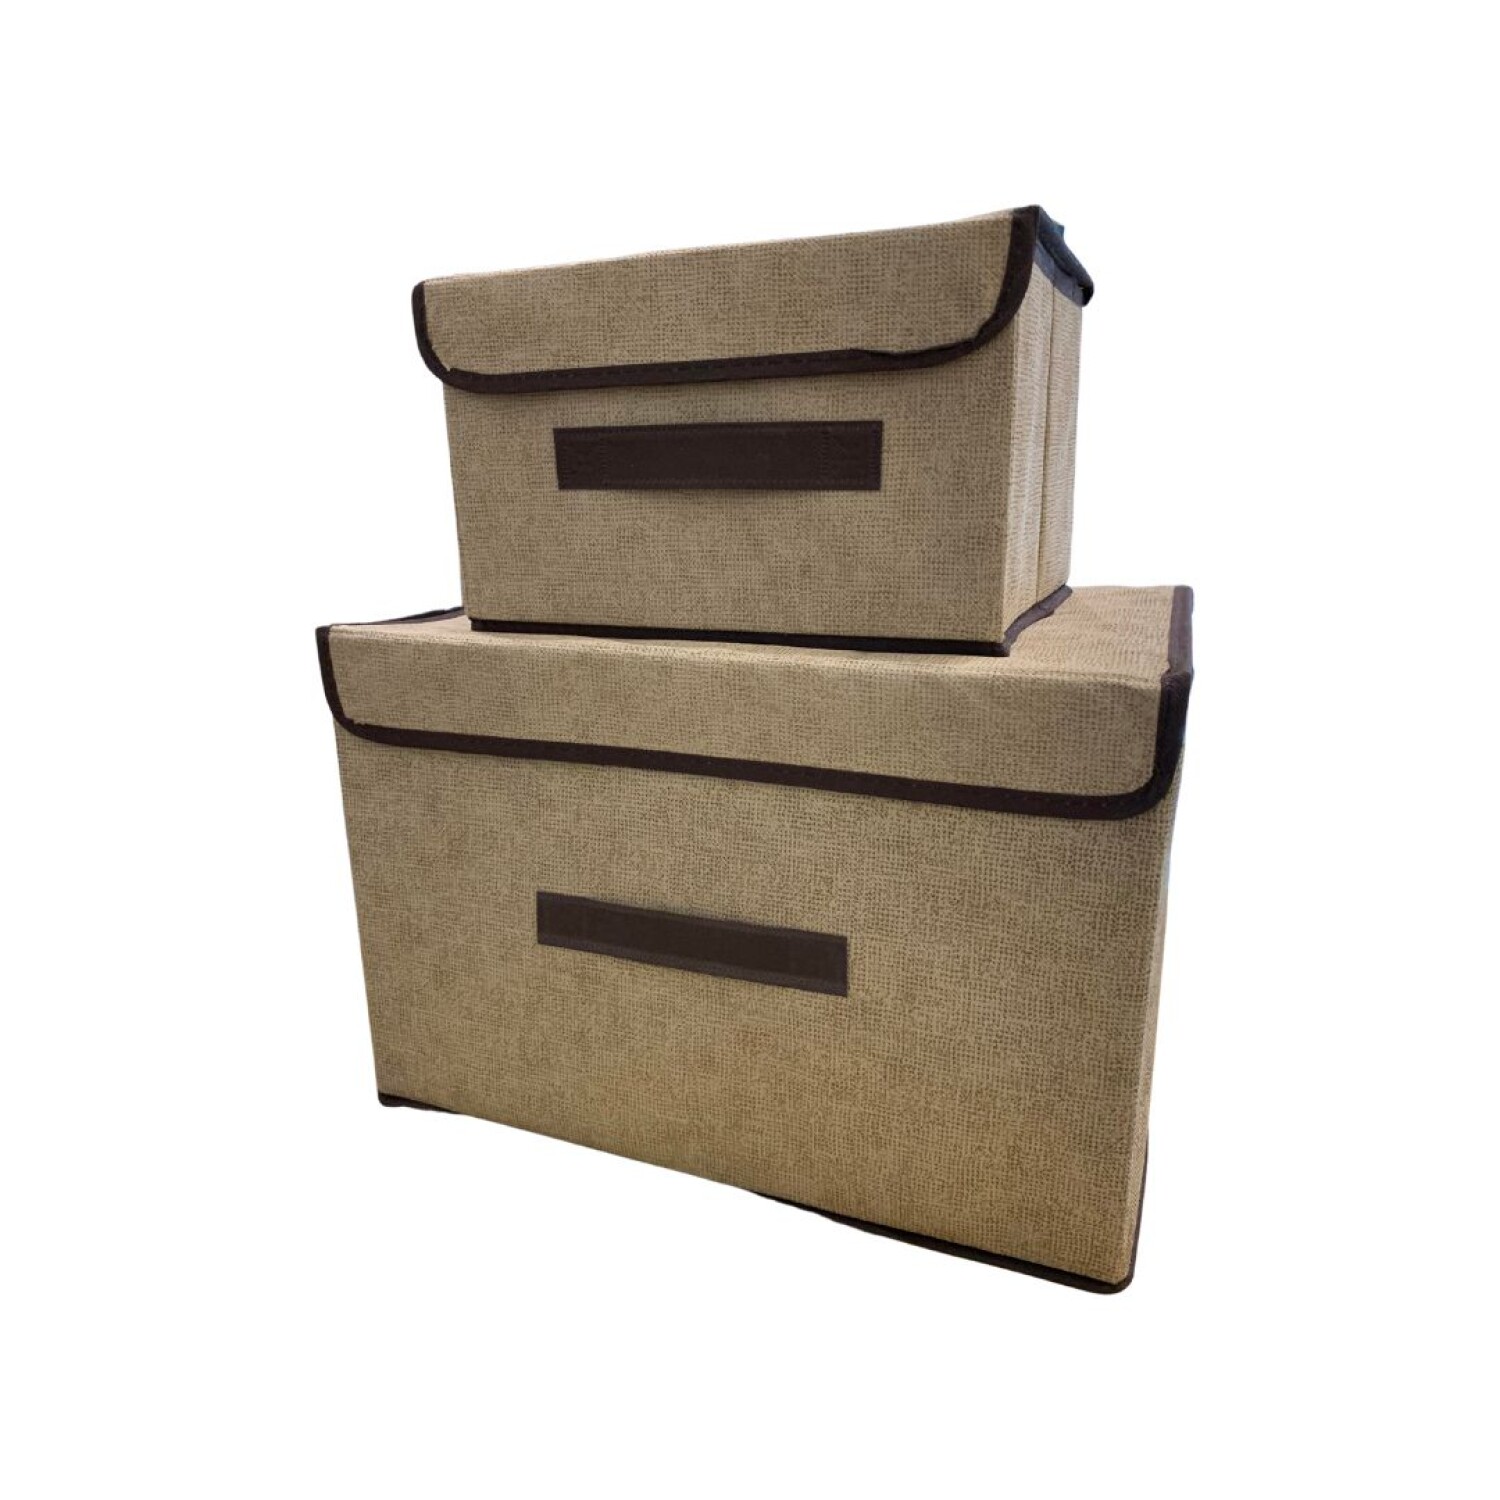 Cajas Organizadoras de escritorio, plegables y apilables 25x10x17cms